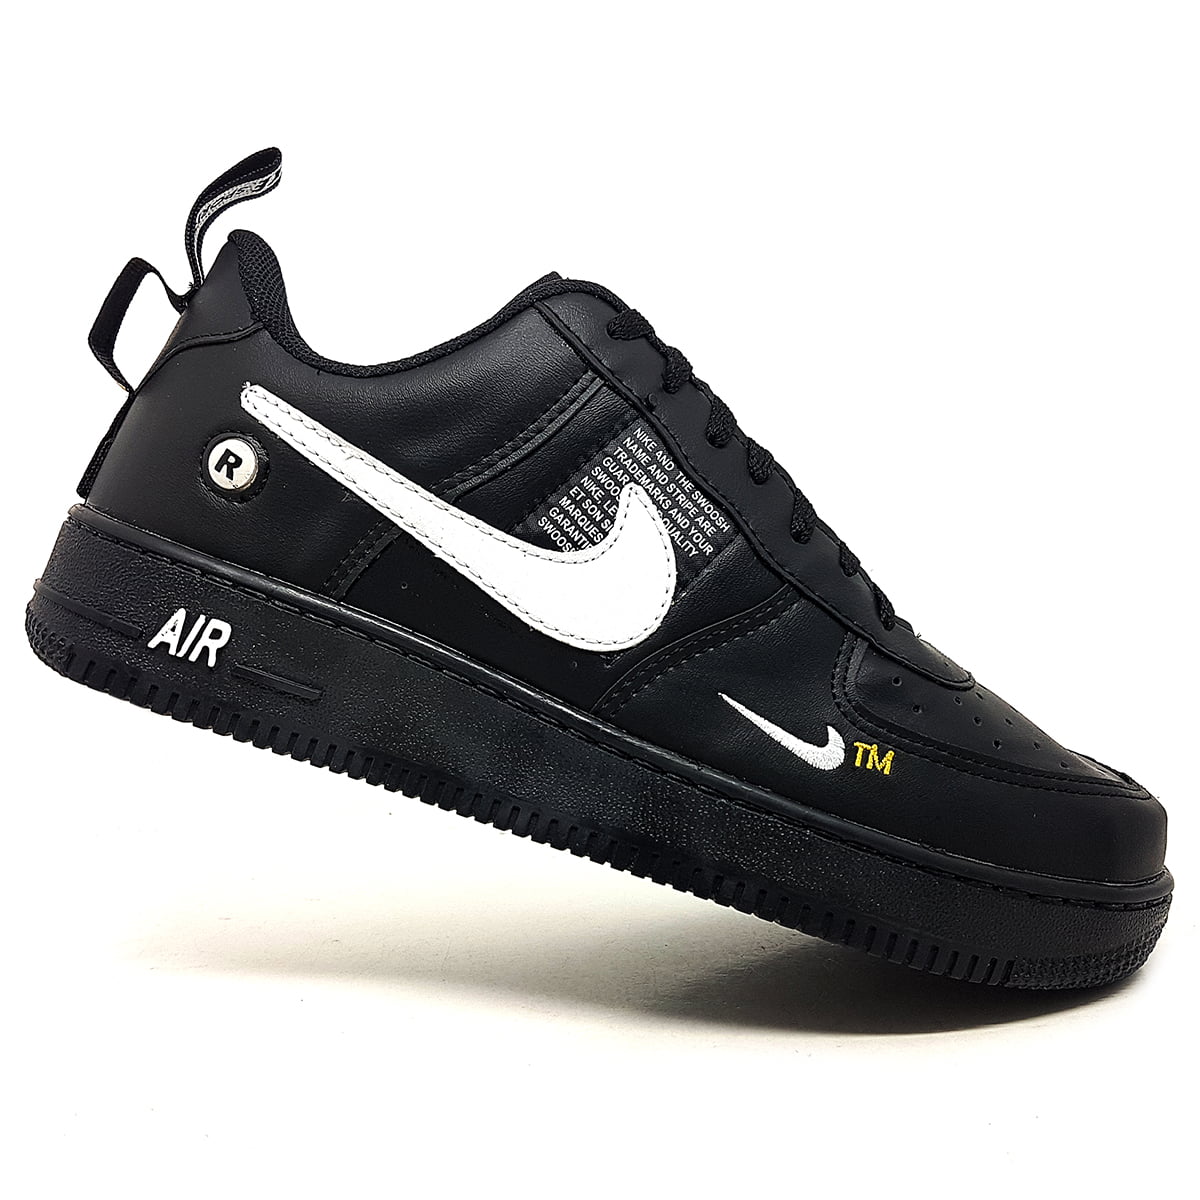 Slum Disposed Atticus Tênis Nike Air Force 1 TM - Dunk Shoes Brasil O menor preço no Brasil de  Tênis das melhores marcas